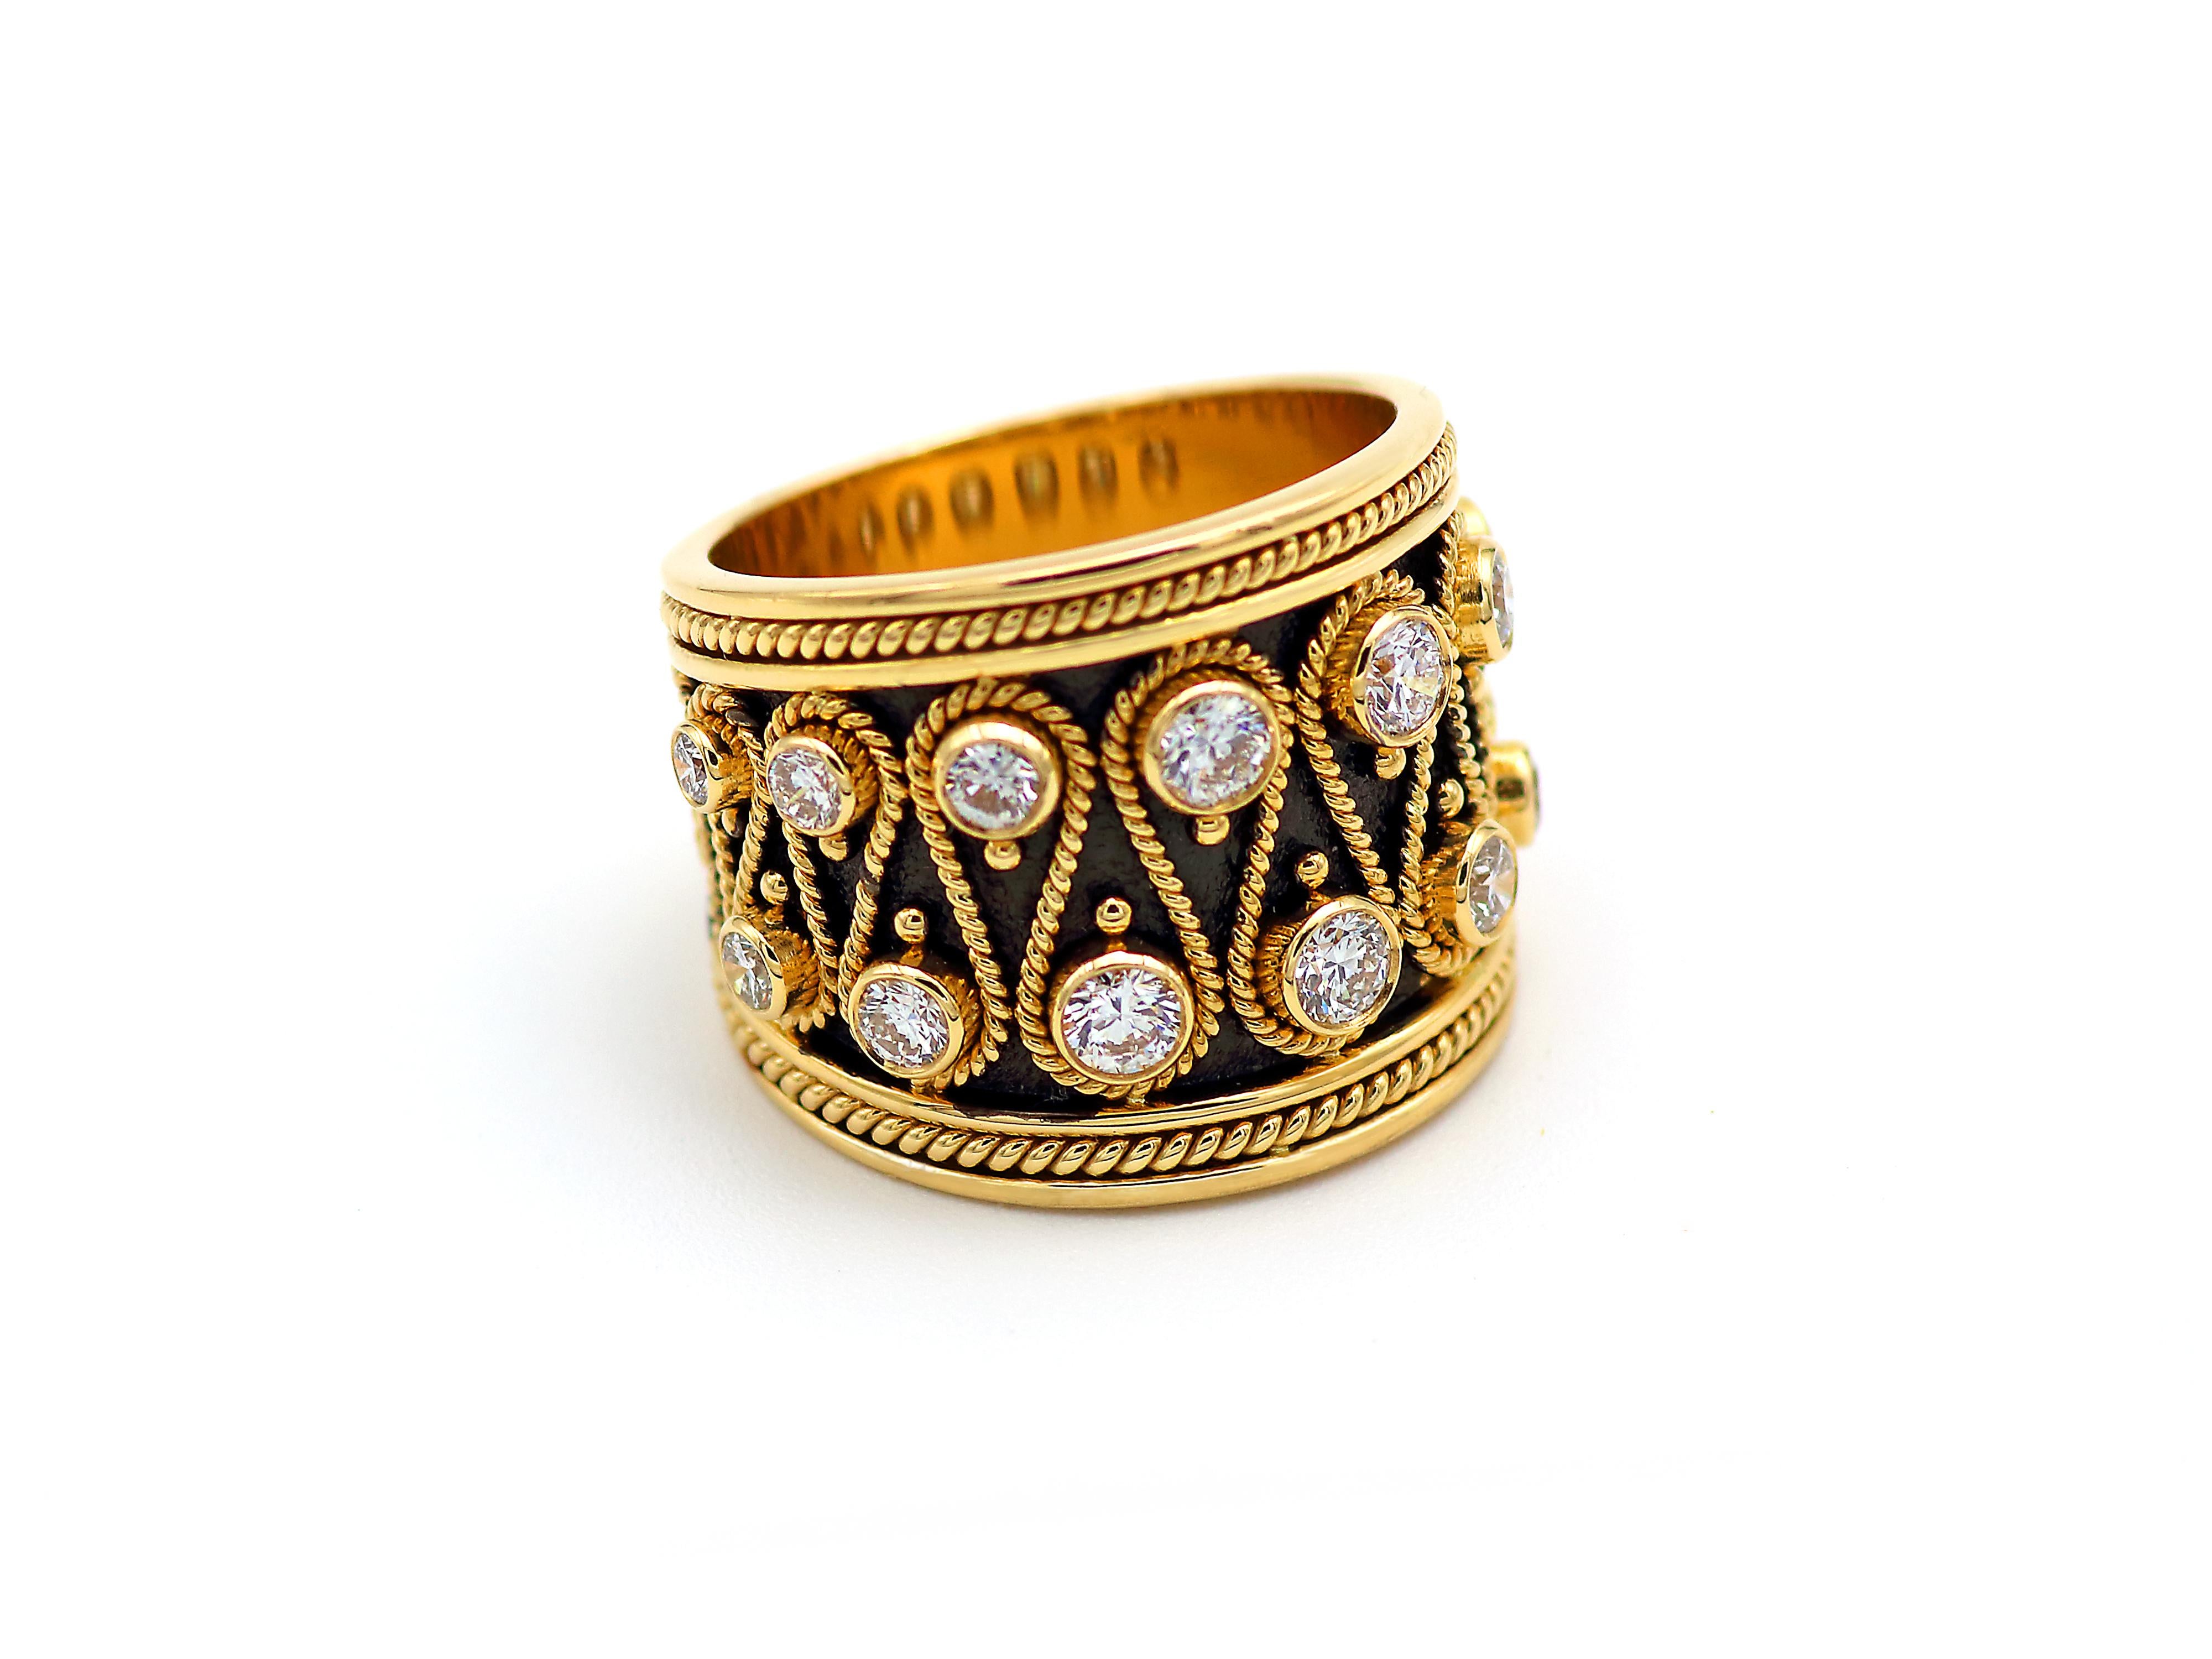 Βyzantinisch inspirierter Bandring der Collection'S Noir, handgefertigt von Dimos aus 18 Karat Gelbgold und mit 1,34 Karat natürlichen Brillanten besetzt. 
Handgefertigte Filigran- und Granulatperlen bilden diesen massiven und schweren Ring. Dieser